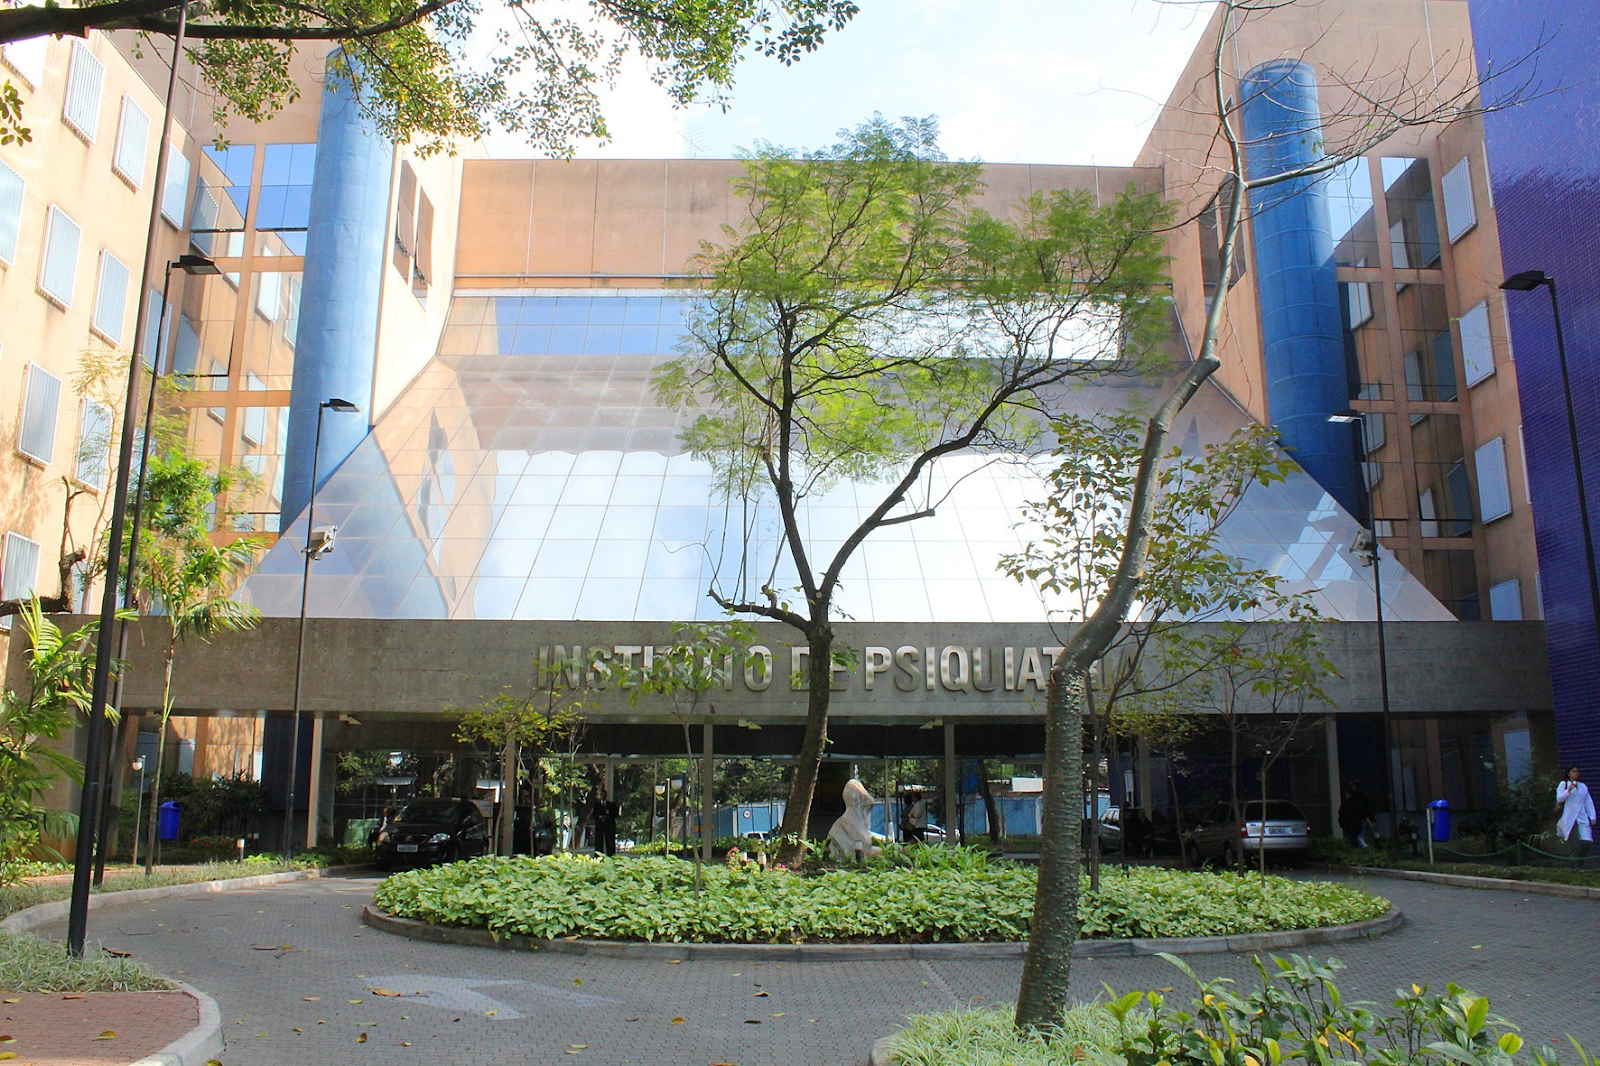 Foto mostra a entrada de um prédio cinza e azul, com árvores, uma estátua e uma passagem para carros, e no canto direito aparece uma mulher vestida de jaleco branco. O local também possui um letreiro informando ser a sede do Instituto de Psiquiatria do Hospital da Clínicas da USP, em São Paulo